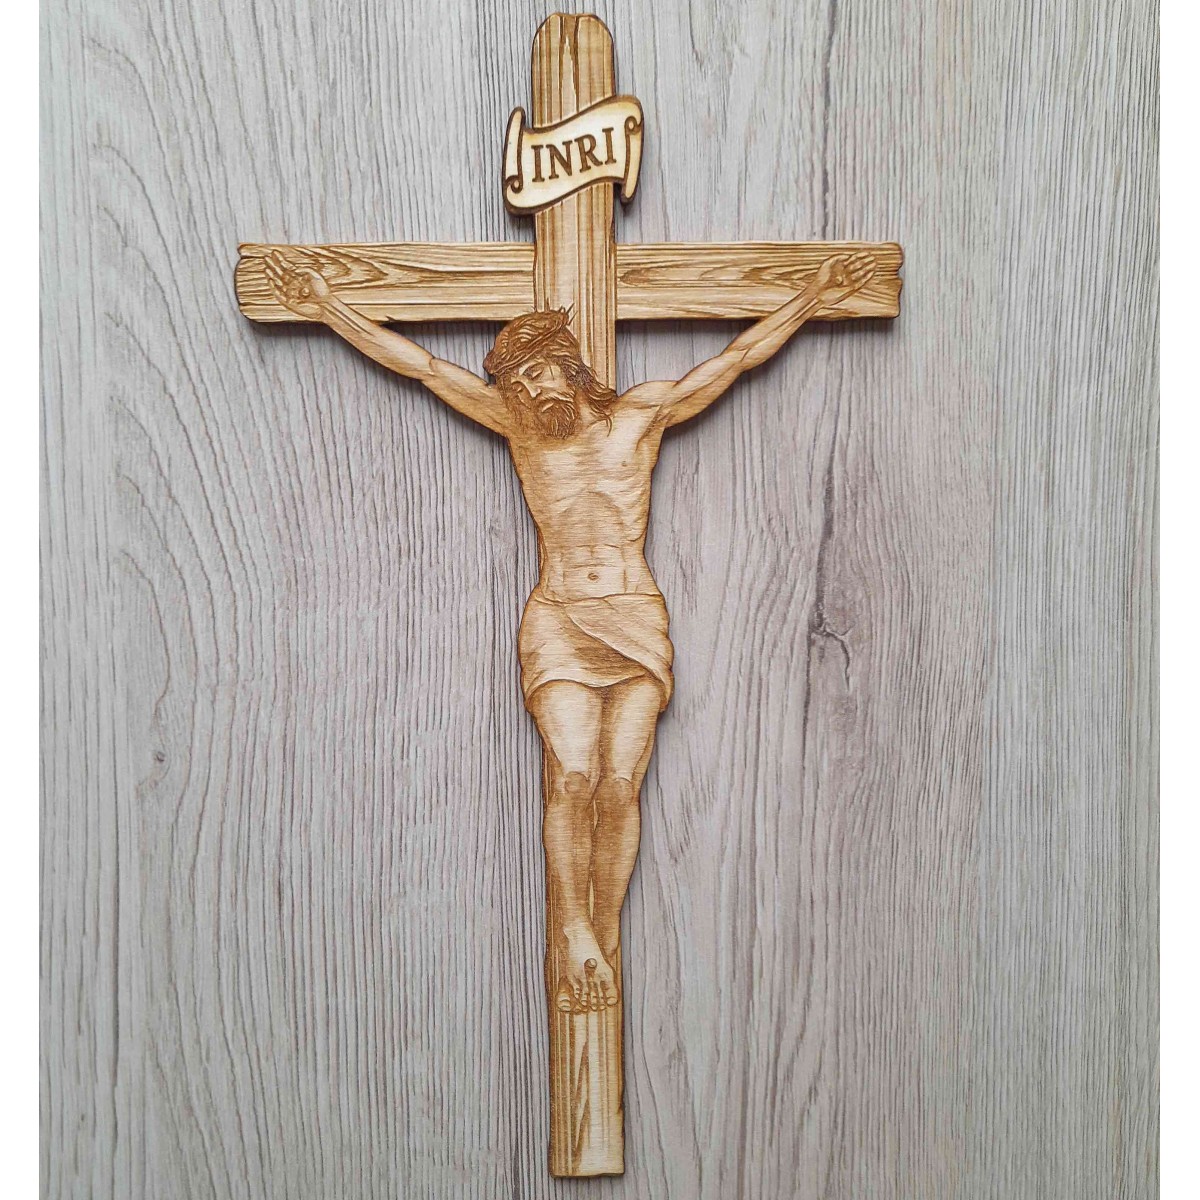 Drevený závesný kríž gravírovaný a vyrezávaný laserom z preglejky s námetom Ježiša na kríži